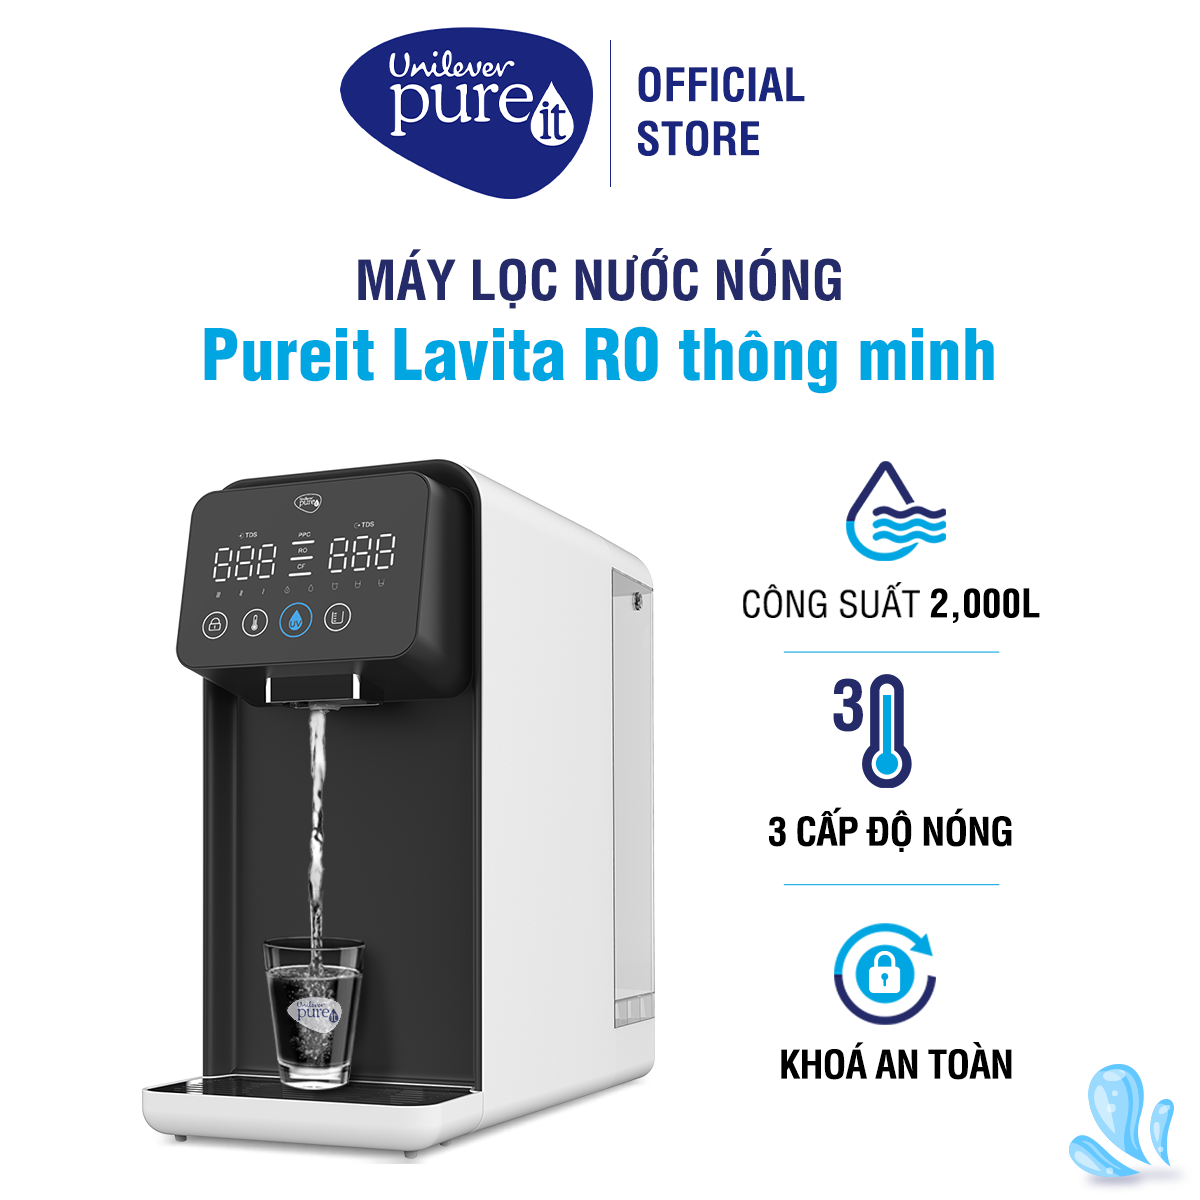 Máy Lọc Nước Pureit Lavita - CR5240 Chức Năng Làm Nóng Nhiều Cấp Độ Tích Hợp Công Nghệ RO+UV - Hàng Chính Hãng